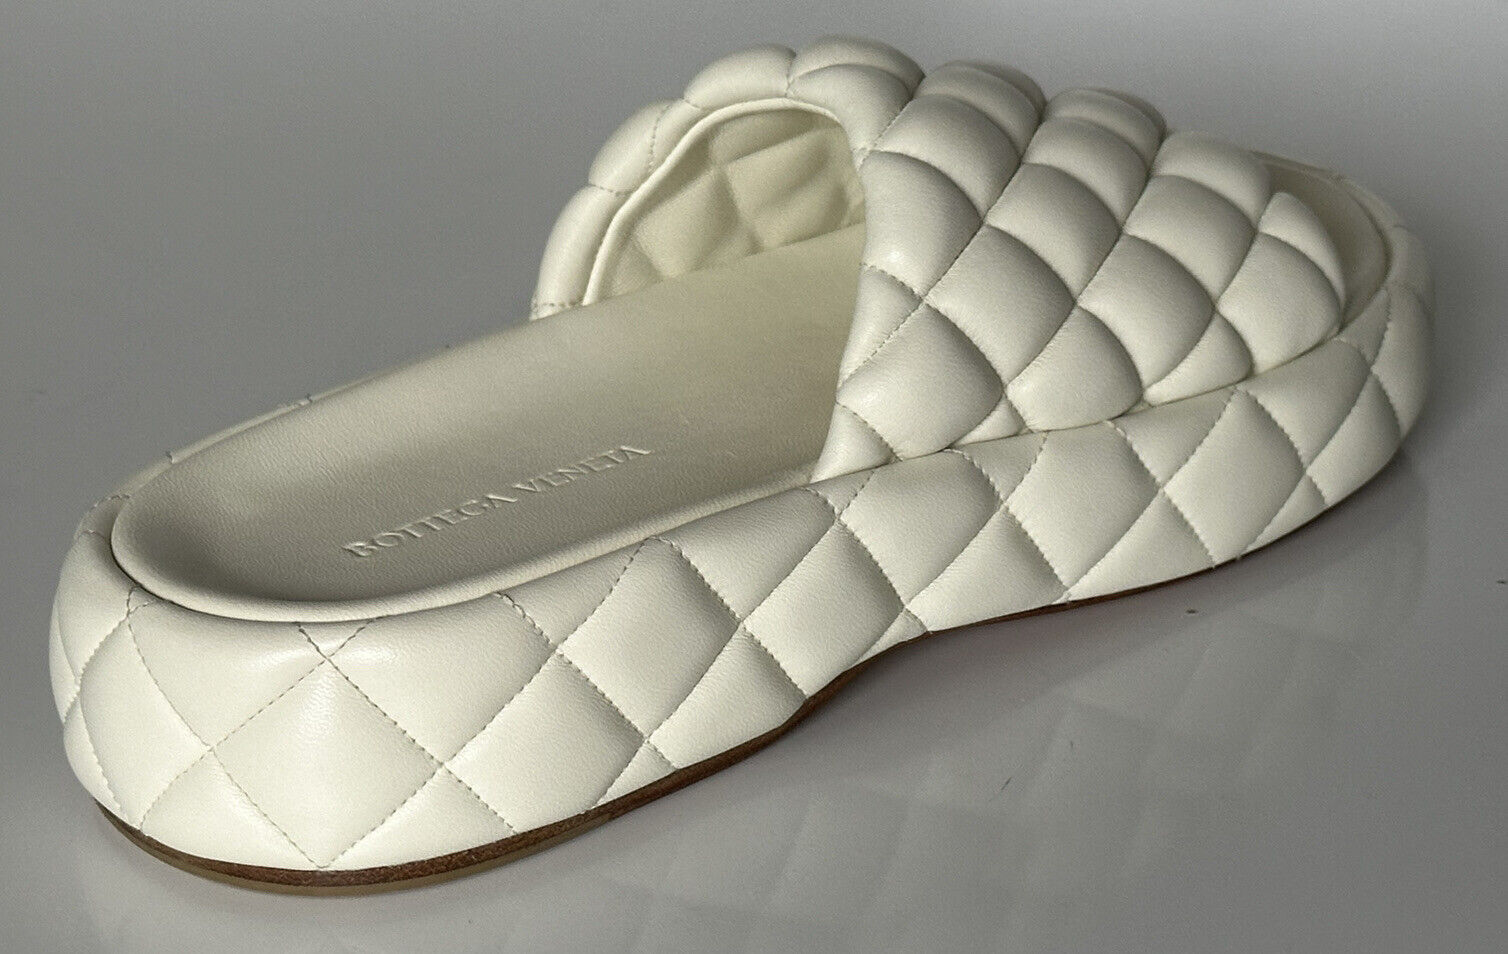 NIB Белые кожаные стеганые сандалии Bottega Veneta за 1450 долларов США 10 США 708885 IT